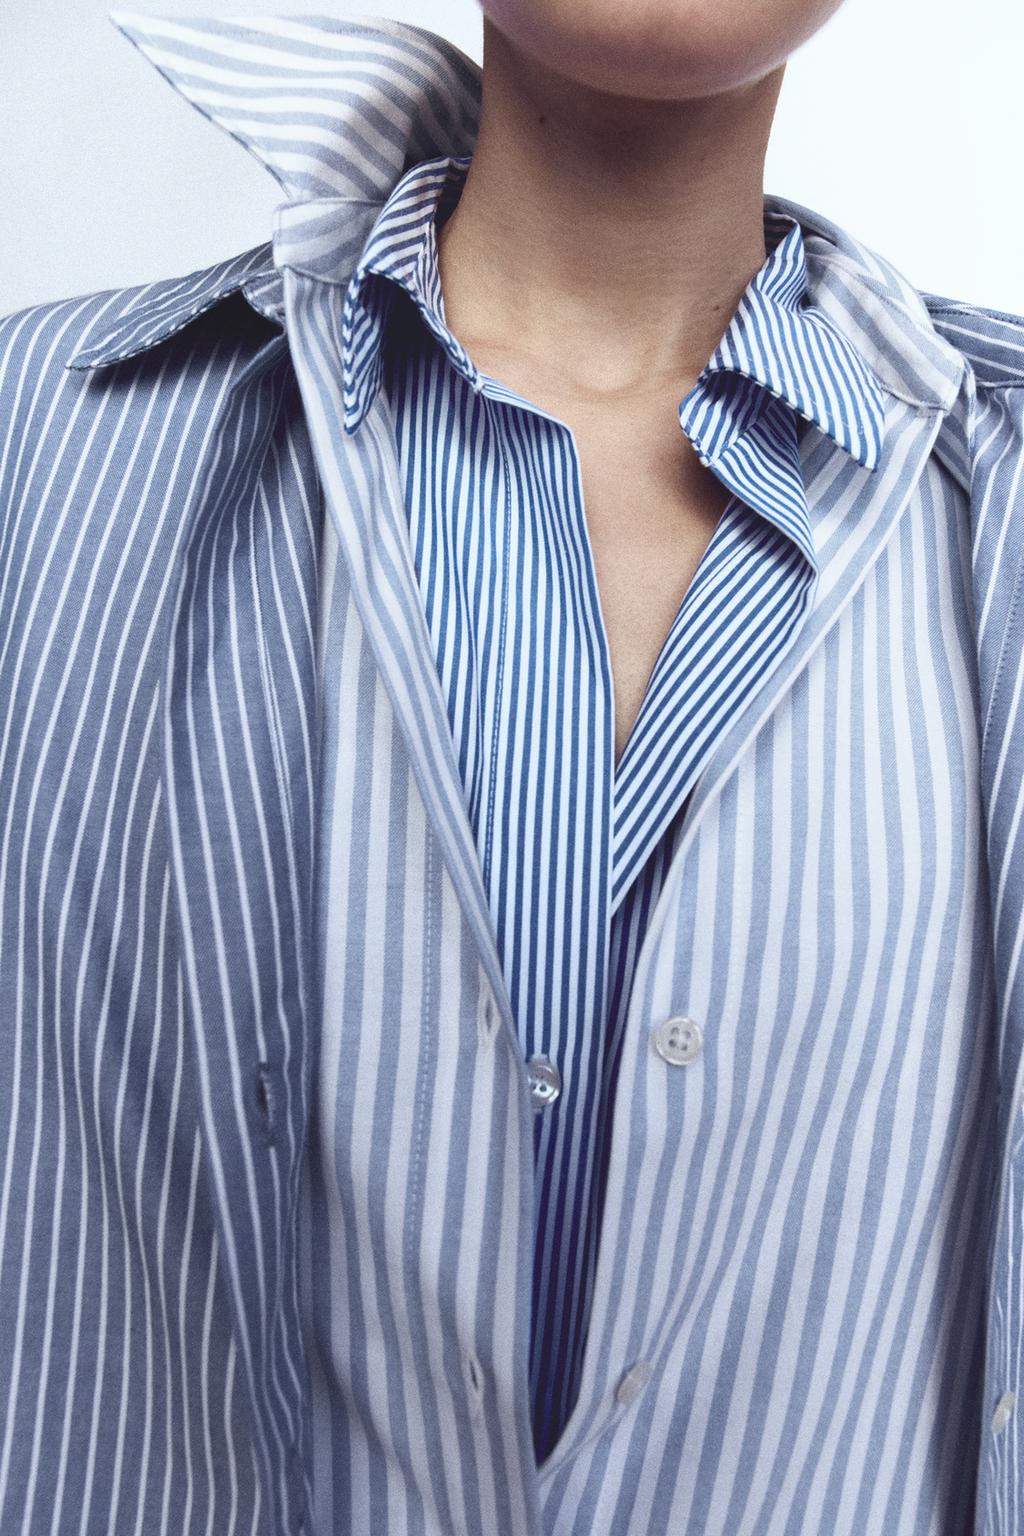 Рубашка поплин ZARA, белый/темно-синий женская рубашка с v образным вырезом осенняя блузка из полиэстера с длинными рукавами v образным вырезом и кружевной вставкой